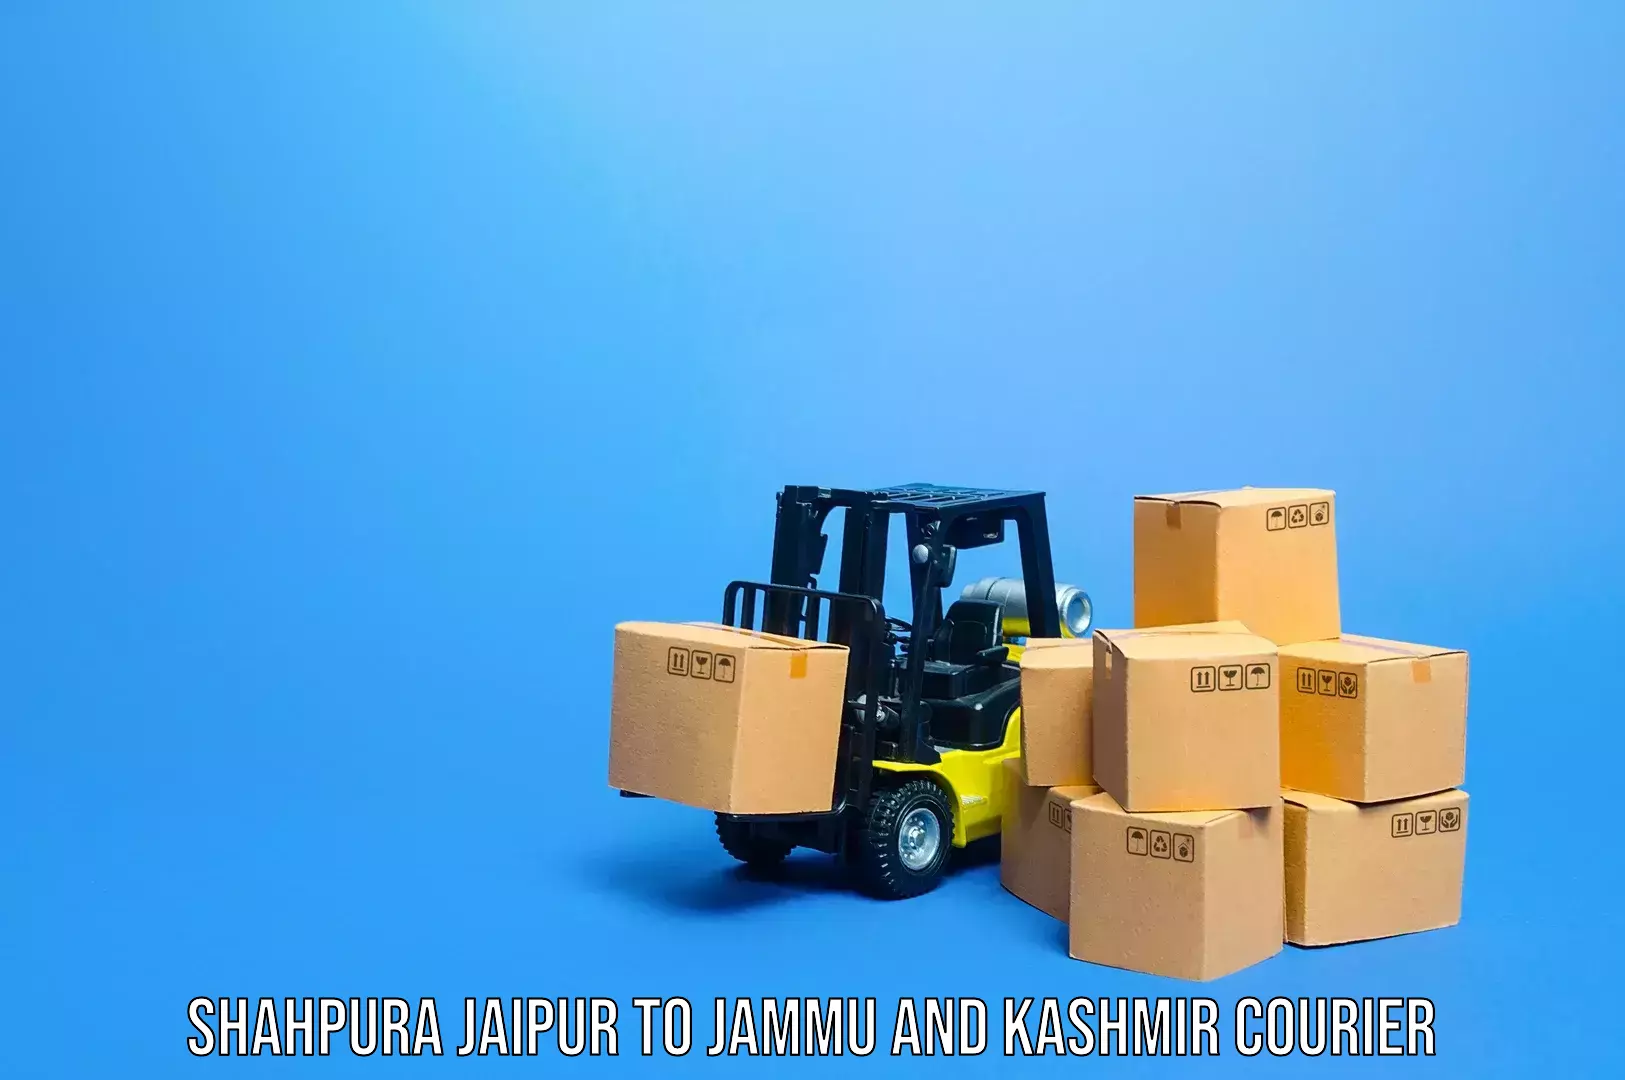 Baggage shipping service Shahpura Jaipur to Srinagar Kashmir